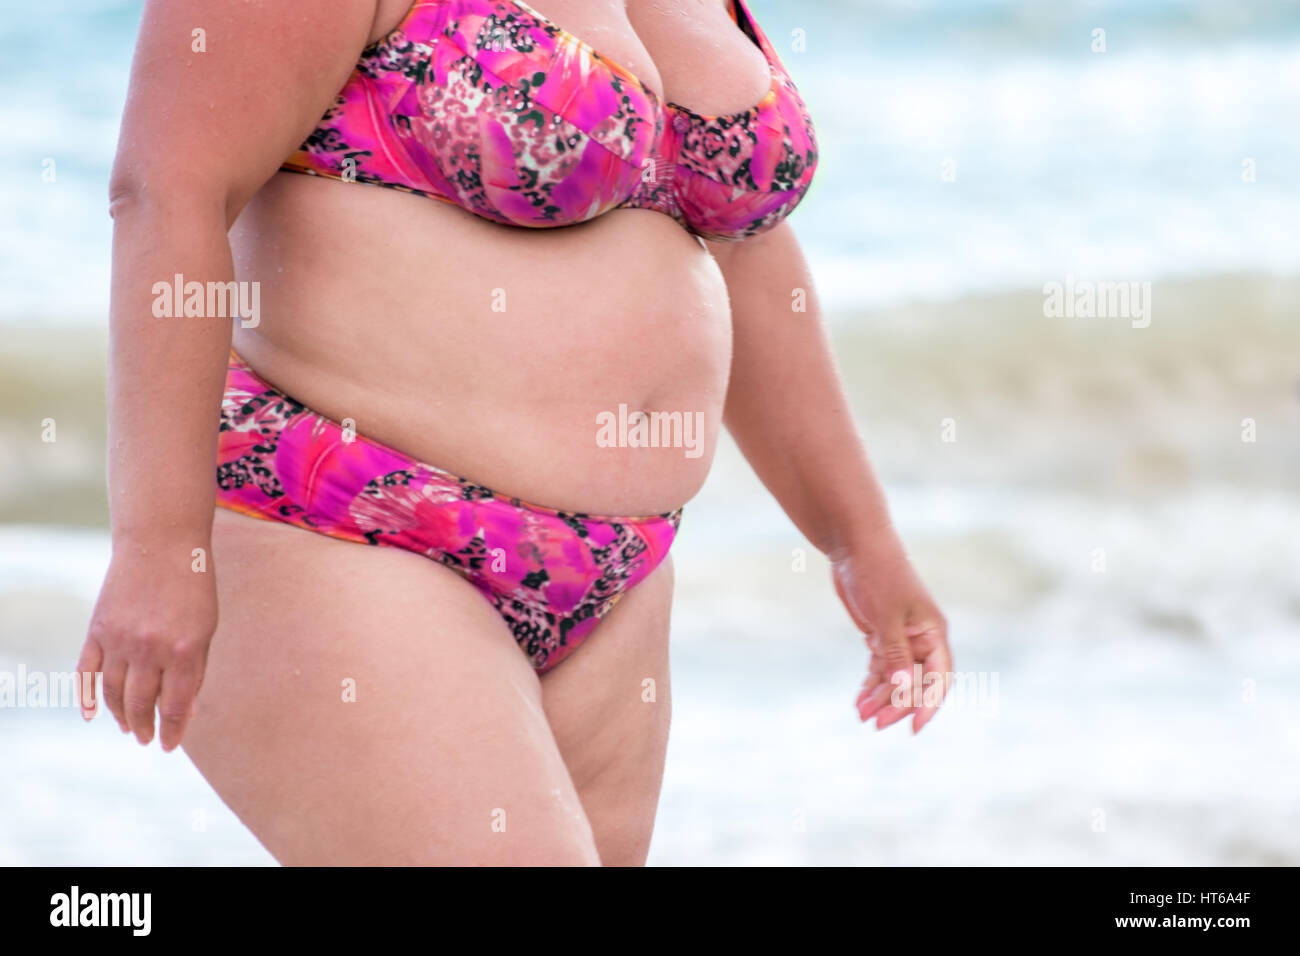 Femme obèse dans un maillot de bain. Dame à gros ventre. Impact négatif  d'un mode de vie sédentaire. Ne pas mettre la santé en péril Photo Stock -  Alamy